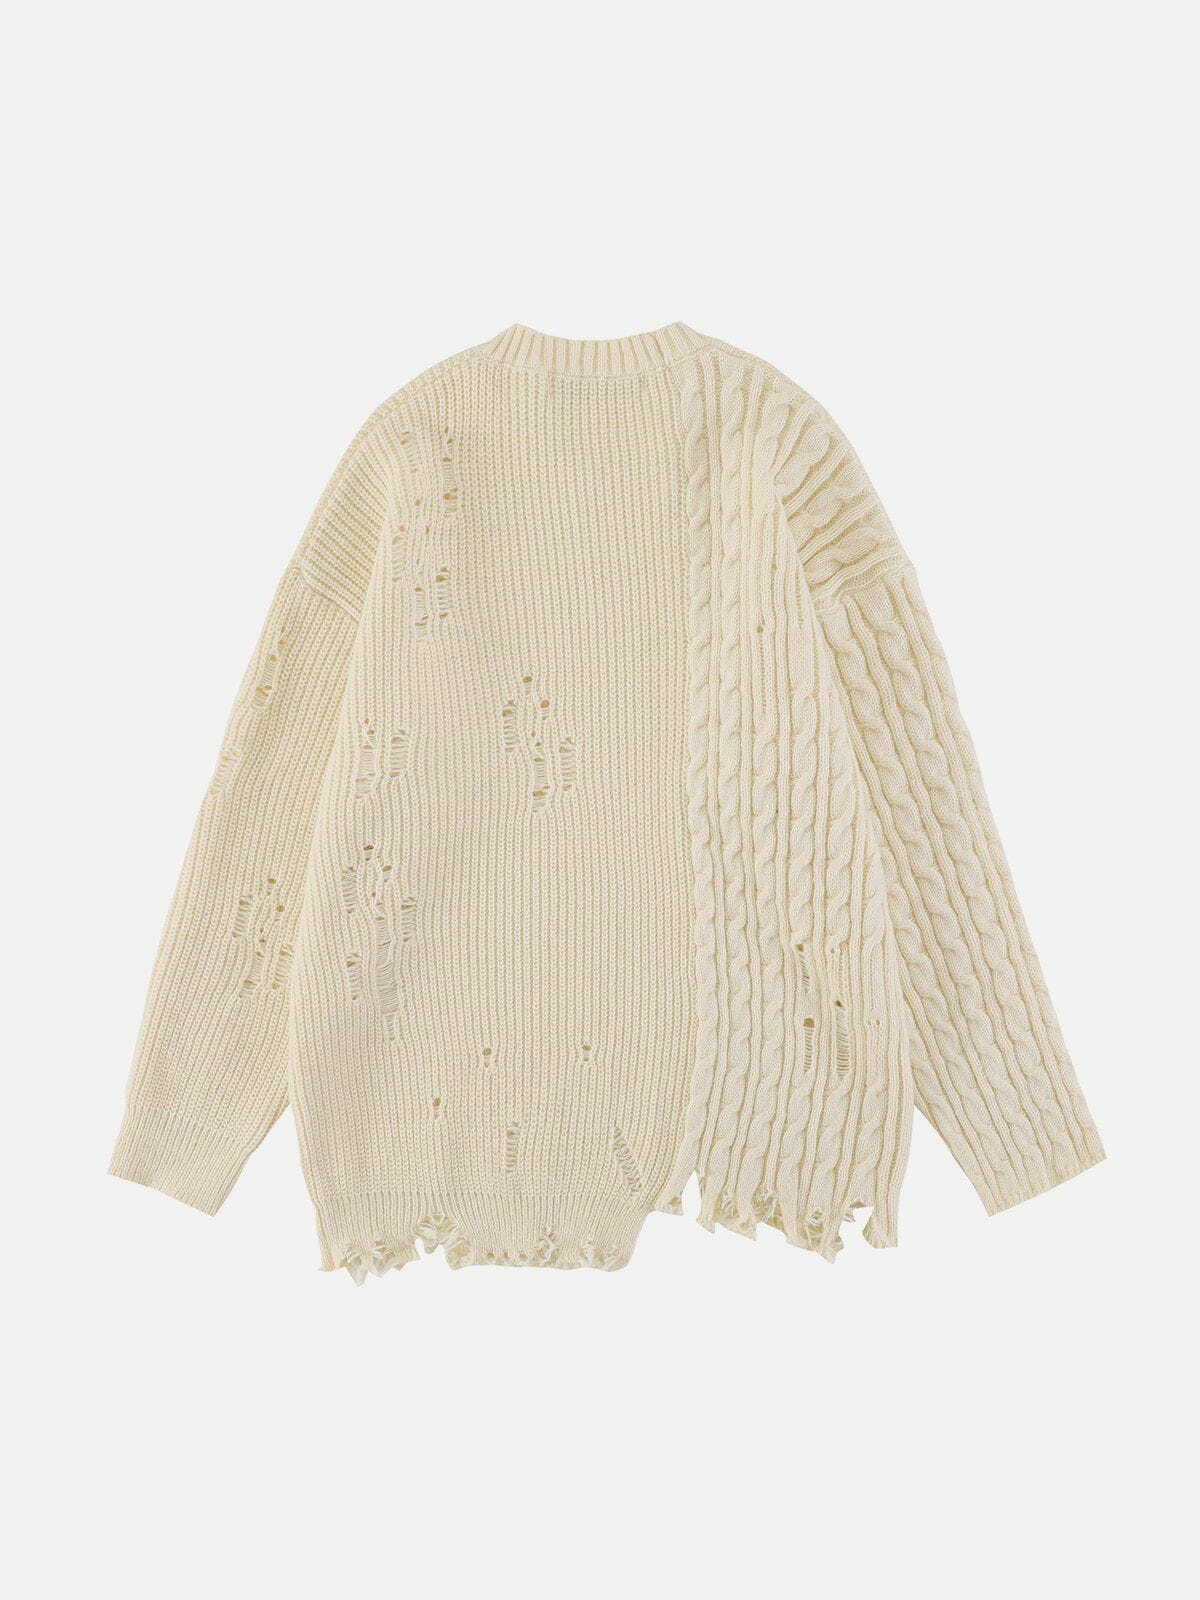 patchwork twist knit sweater edgy y2k streetwear 6091